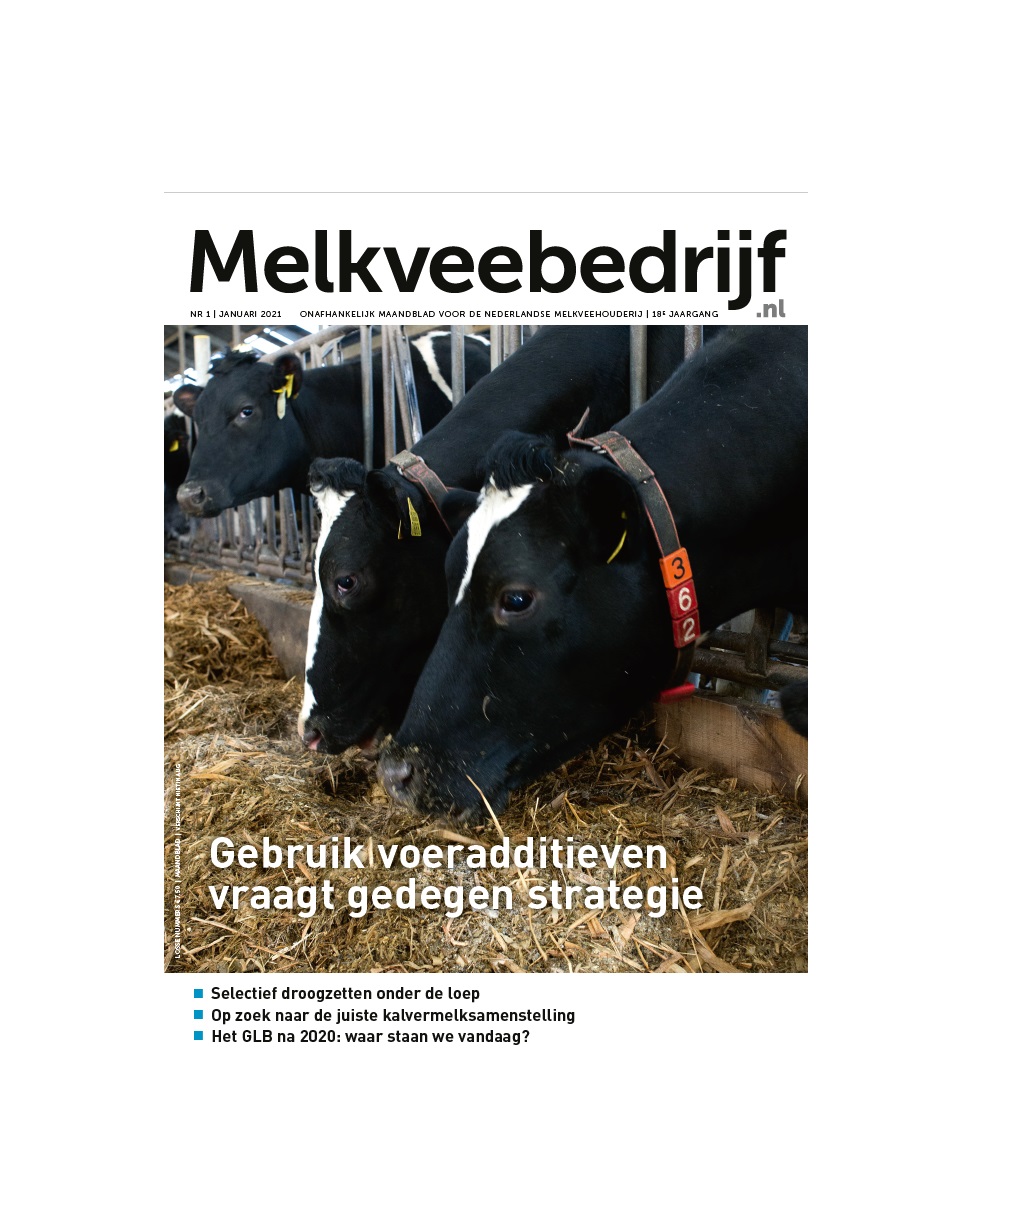 melkveebedrijf-magazine-cover